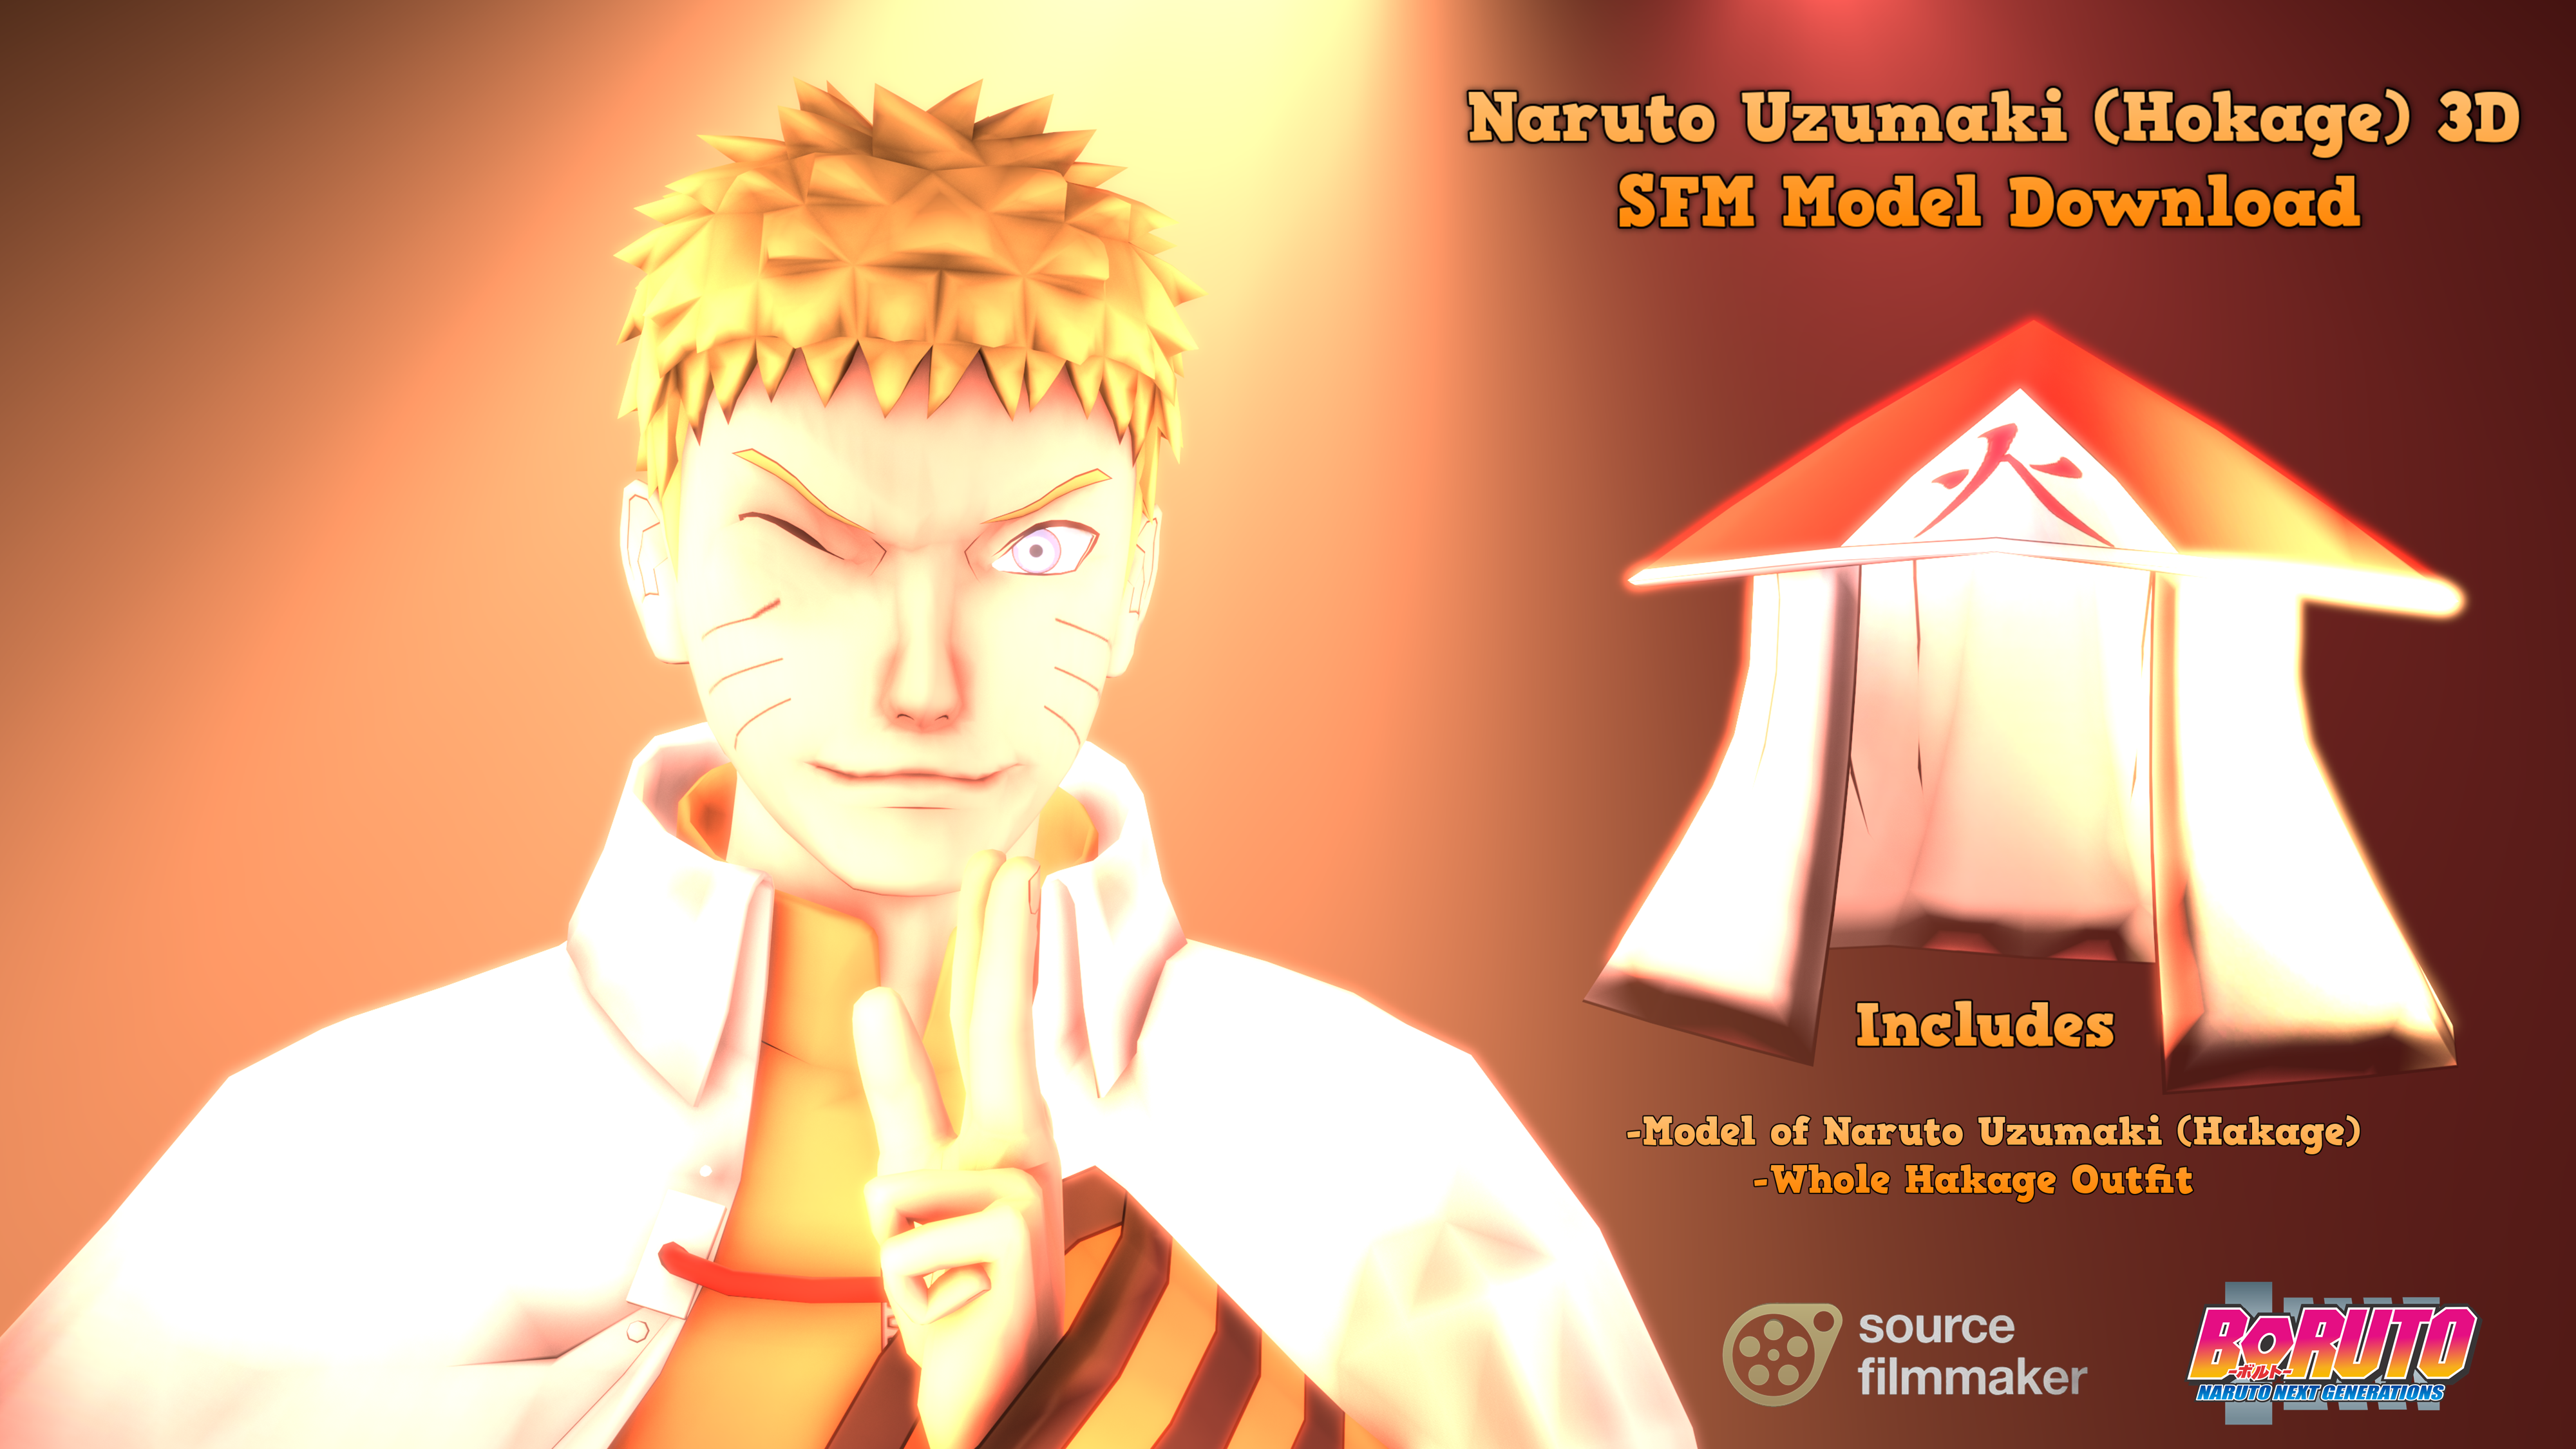 NSUNS4 - Naruto Hokage by LorisC93 on DeviantArt